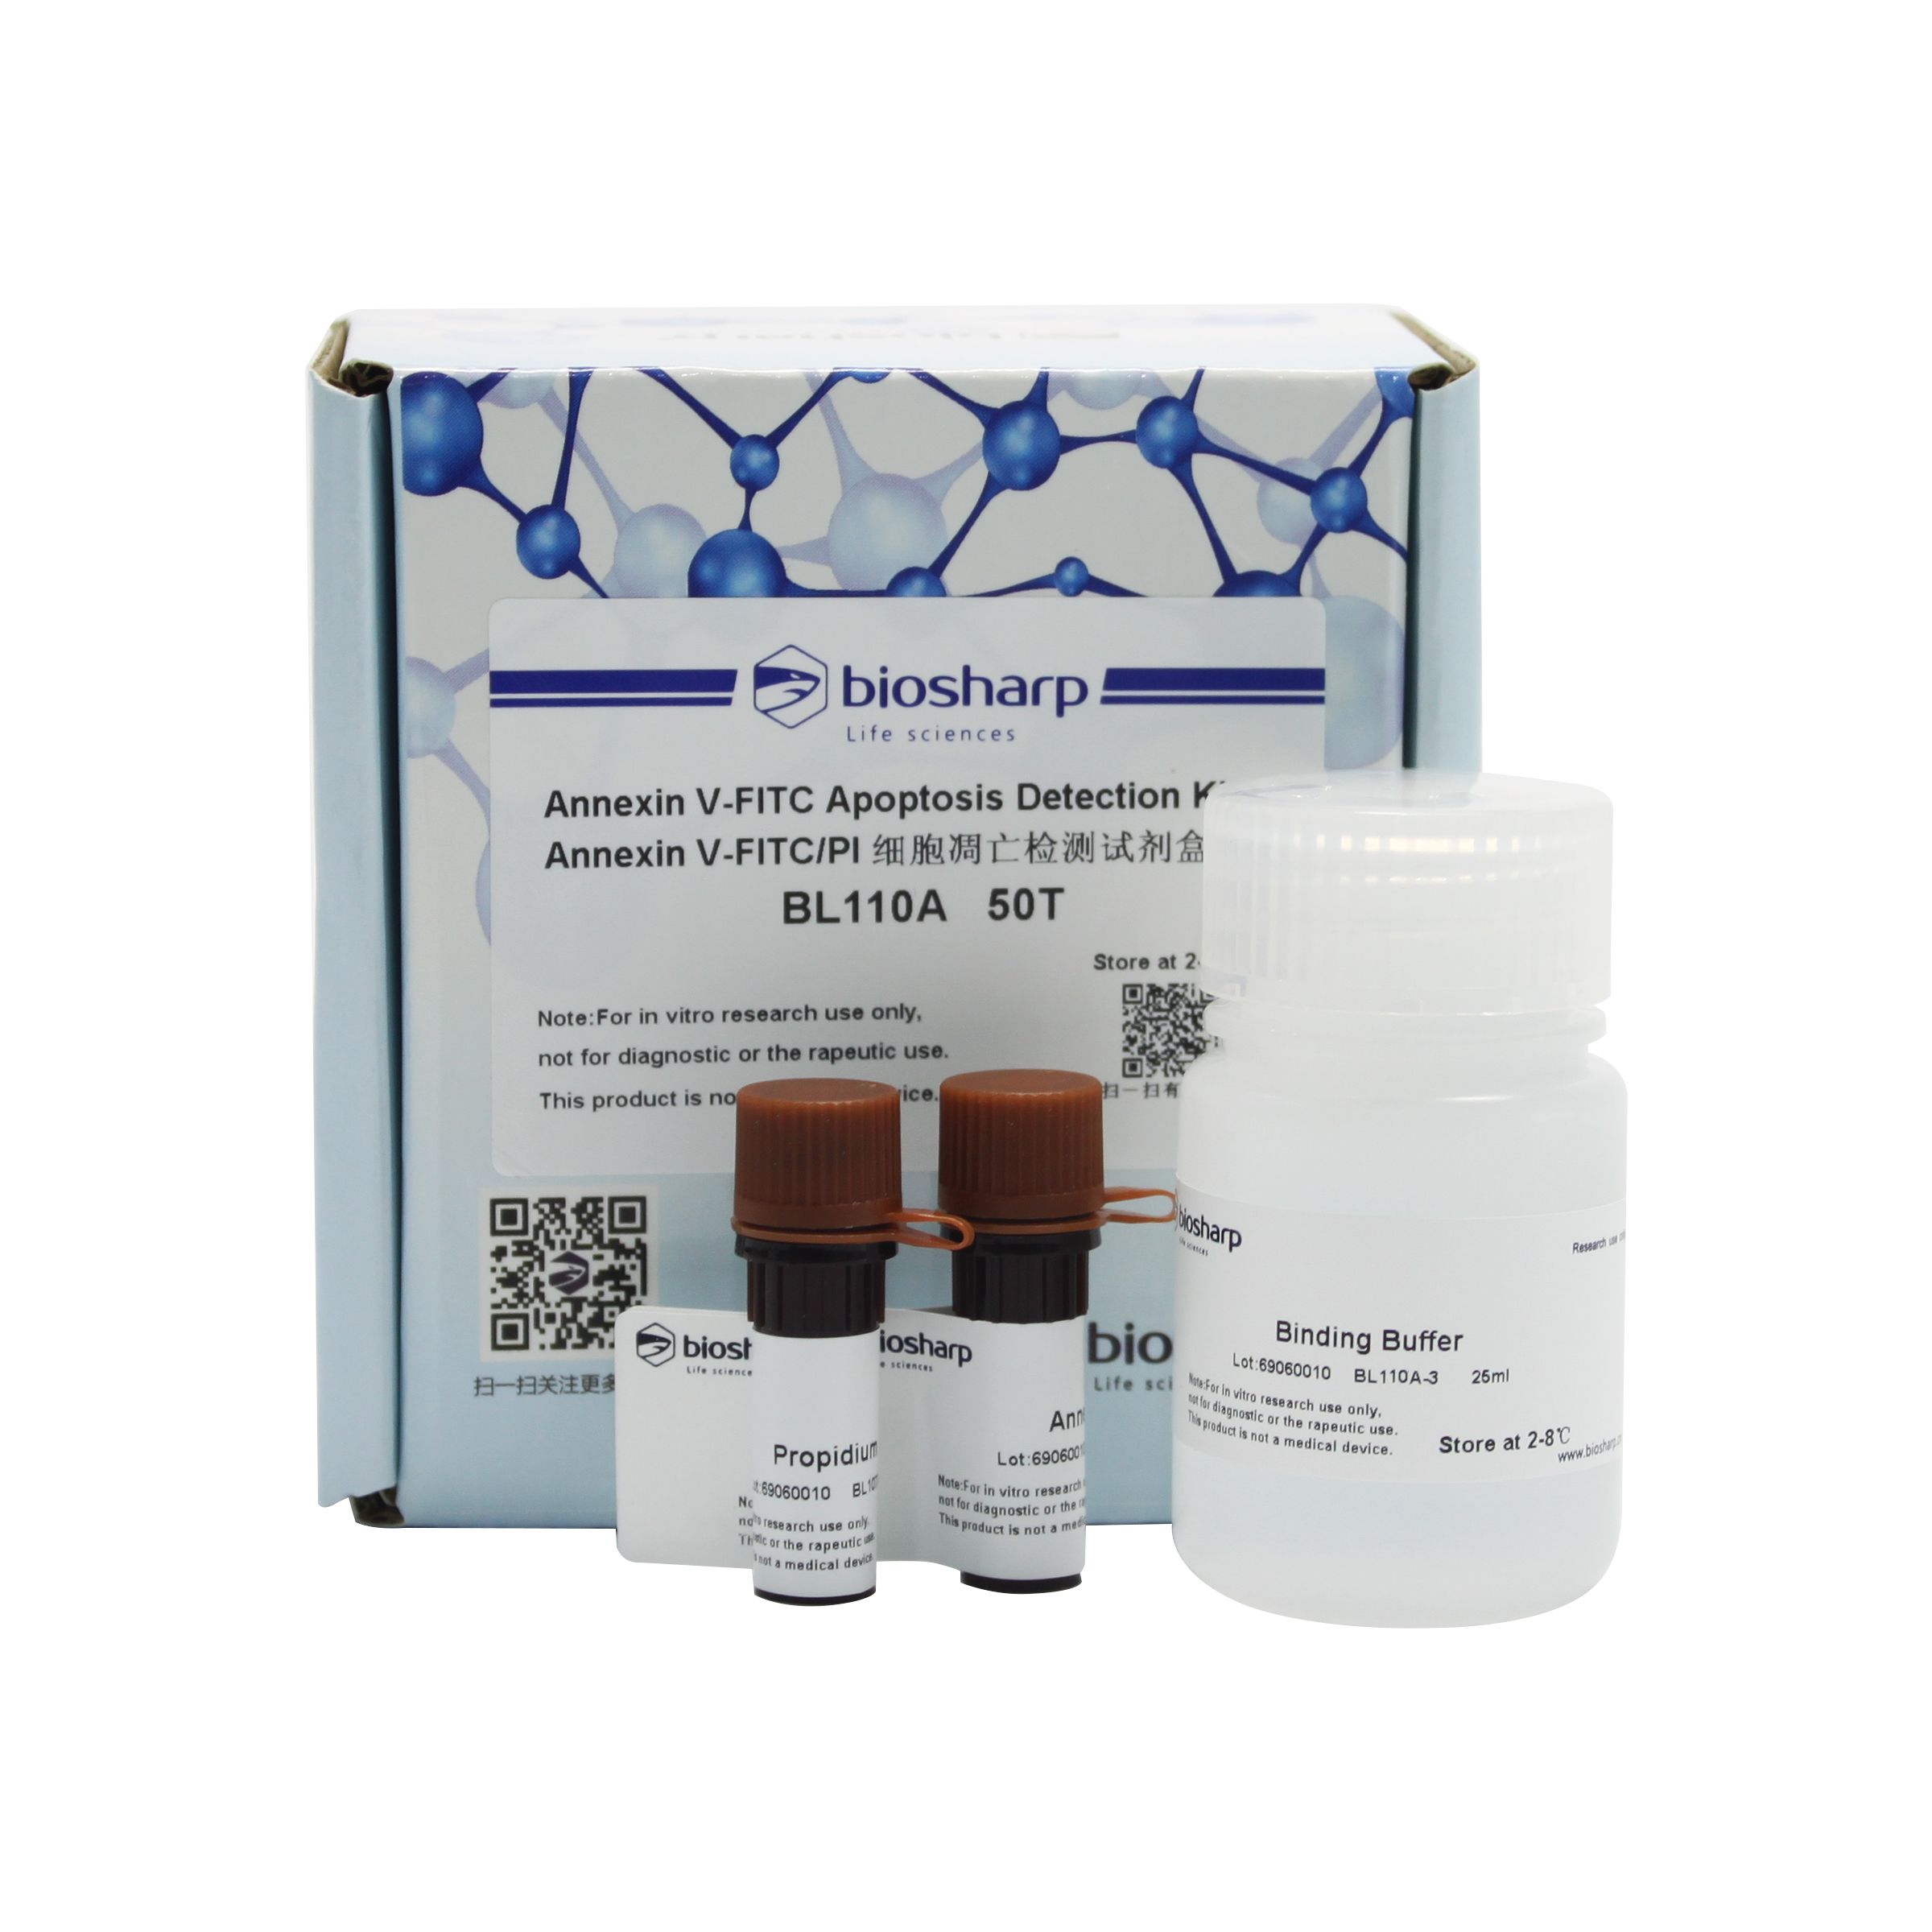 BL110A AnnexinV-FITC/PI双染细胞凋亡检测试剂